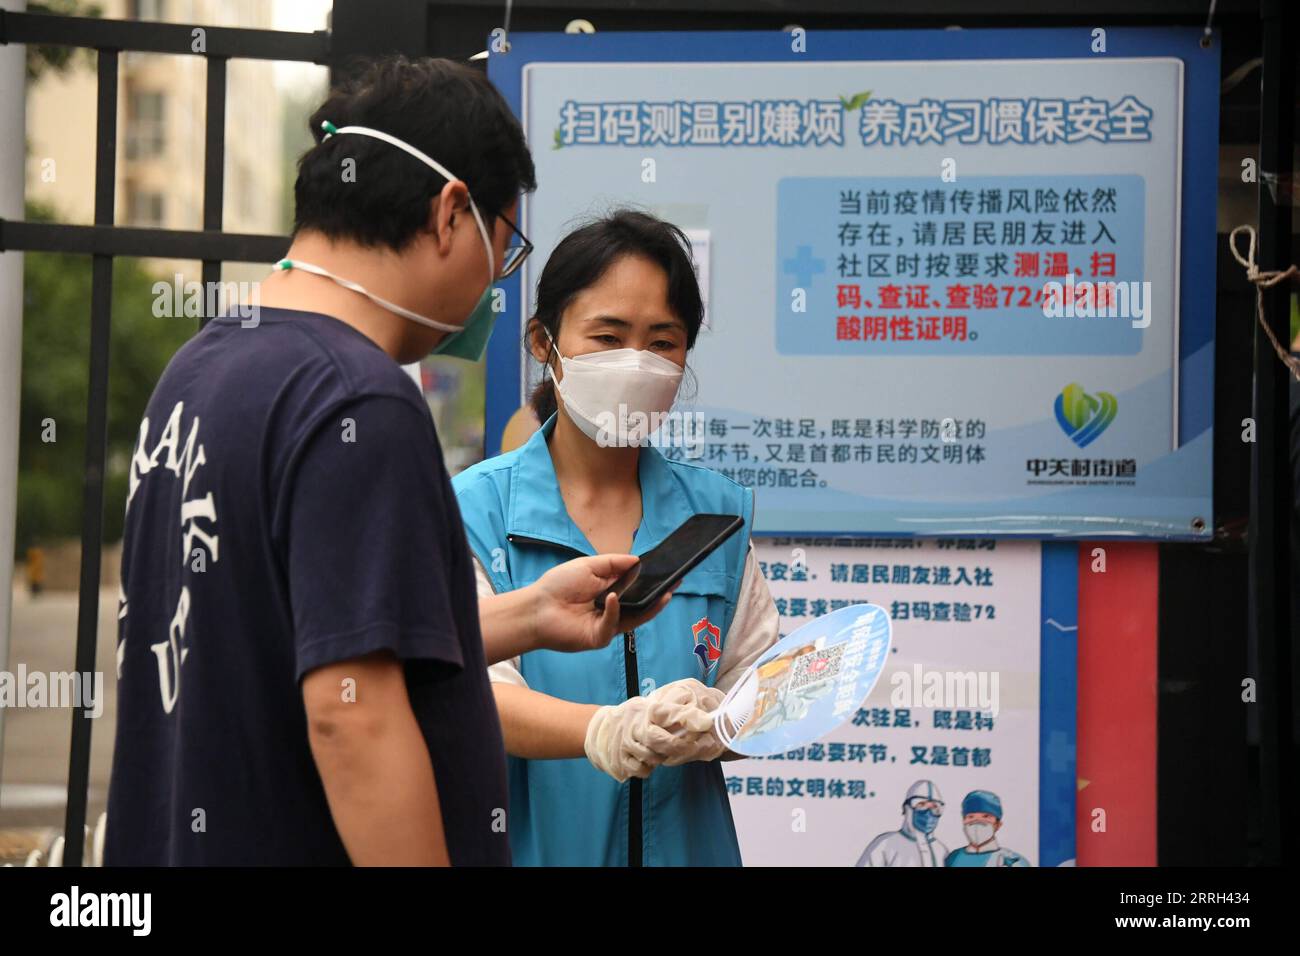 220612 -- BEIJING, le 12 juin 2022 -- Un résident scanne un code QR pour enregistrer son état de santé à l'entrée d'un quartier résidentiel de Zhongguancun, dans le district de Haidian, Beijing, capitale de la Chine, le 12 juin 2022. La région de Zhongguancun à Pékin a imposé des mesures de prévention et de contrôle COVID-19 plus strictes suite à une récente épidémie. Au niveau communautaire, cela comprend un enregistrement plus strict des informations sur les visiteurs, un suivi du code de santé, un contrôle de la température et la vérification des résultats négatifs du test COVID-19. CHINE-PÉKIN-COVID-19-PRÉVENTION ET CONTRÔLE CN RENXCHAO PUBLICATIONXNOTXINXCHN Banque D'Images